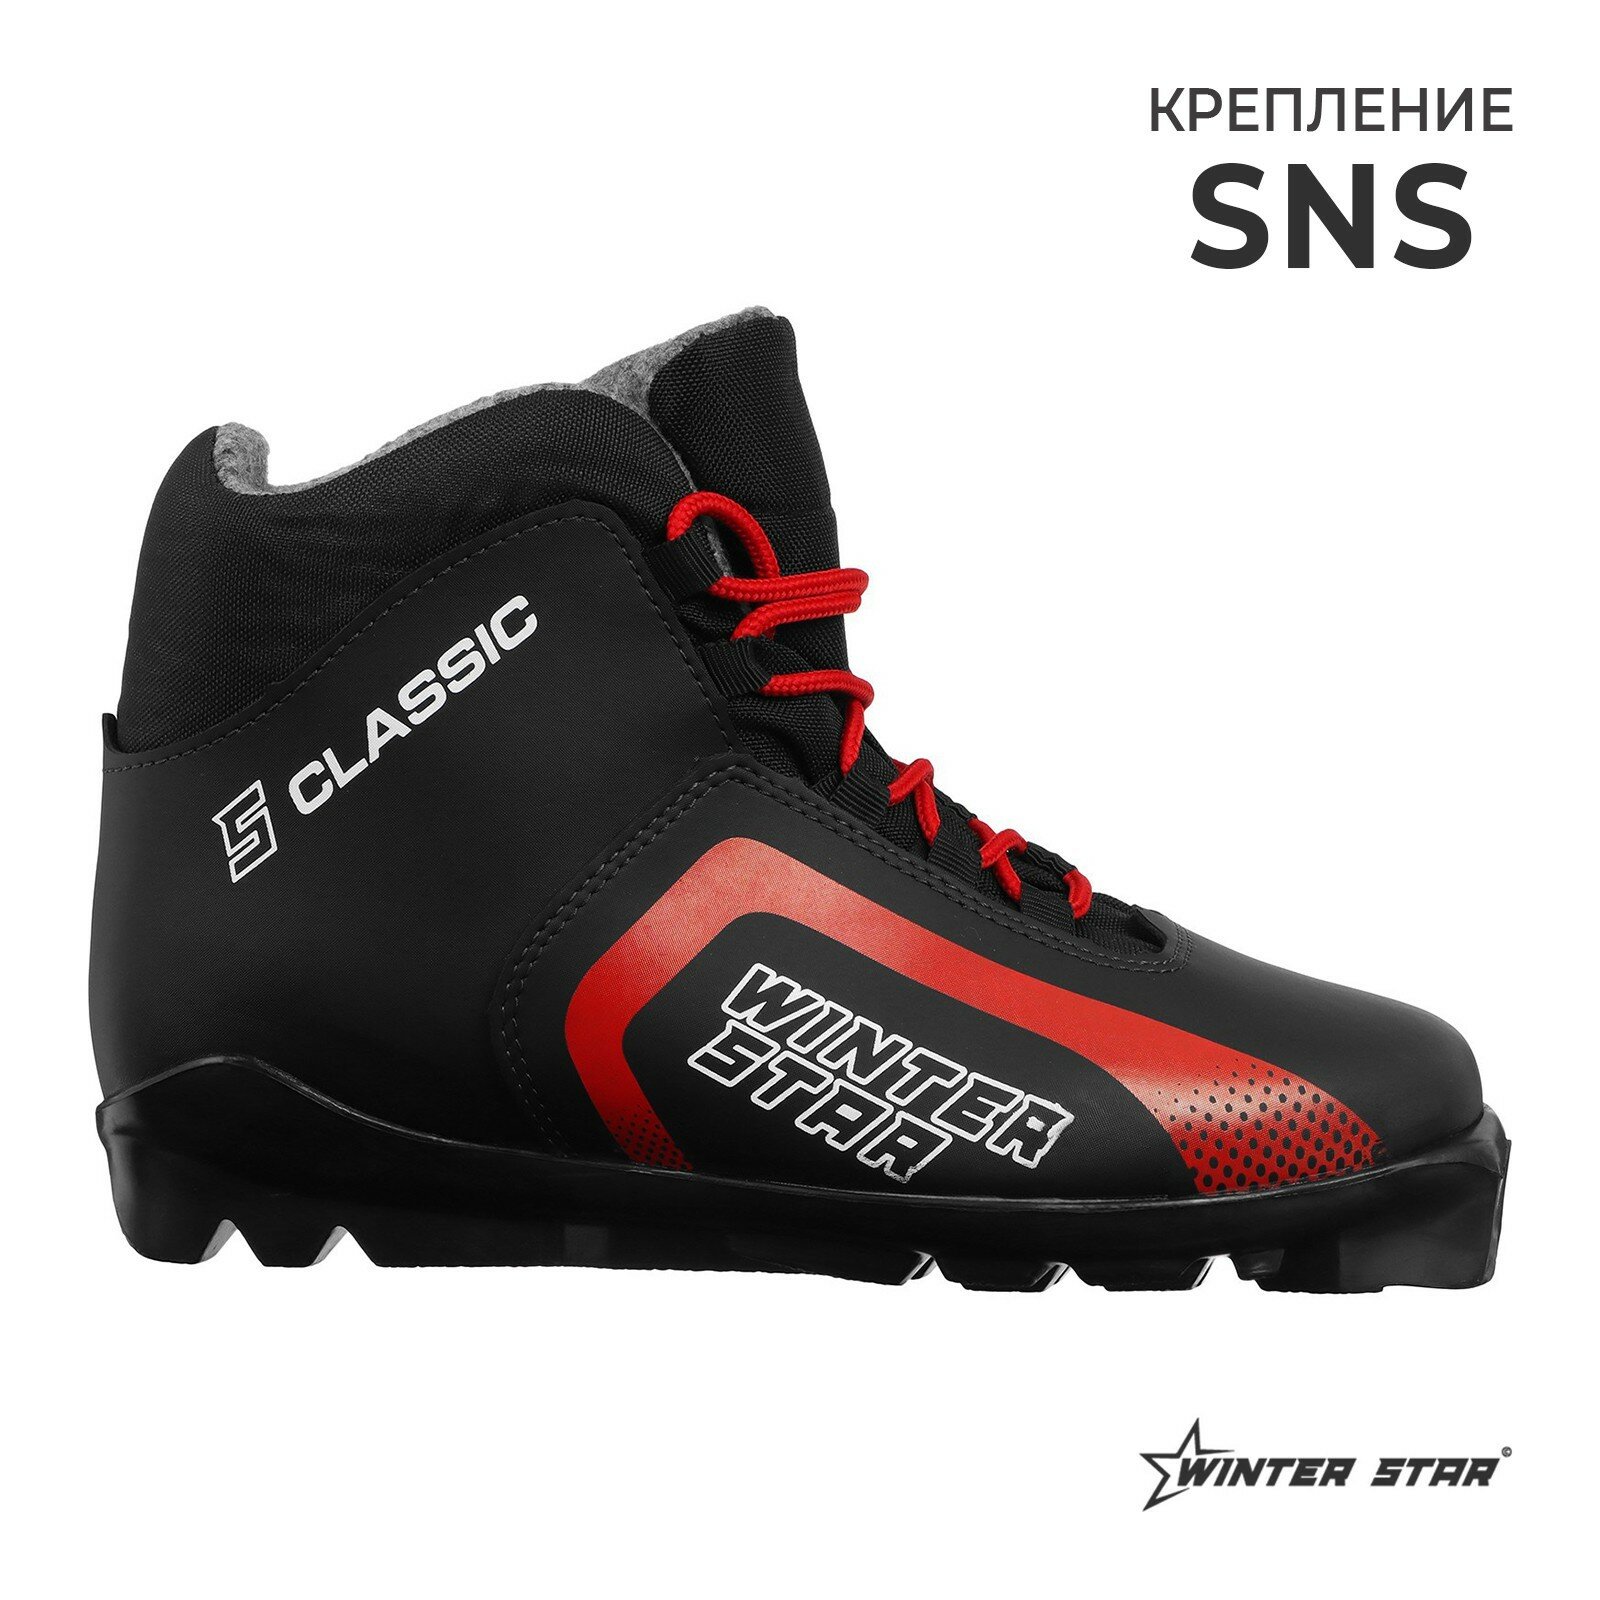 Ботинки лыжные classic, SNS, р. 36, цвет чёрный/красный, лого белый